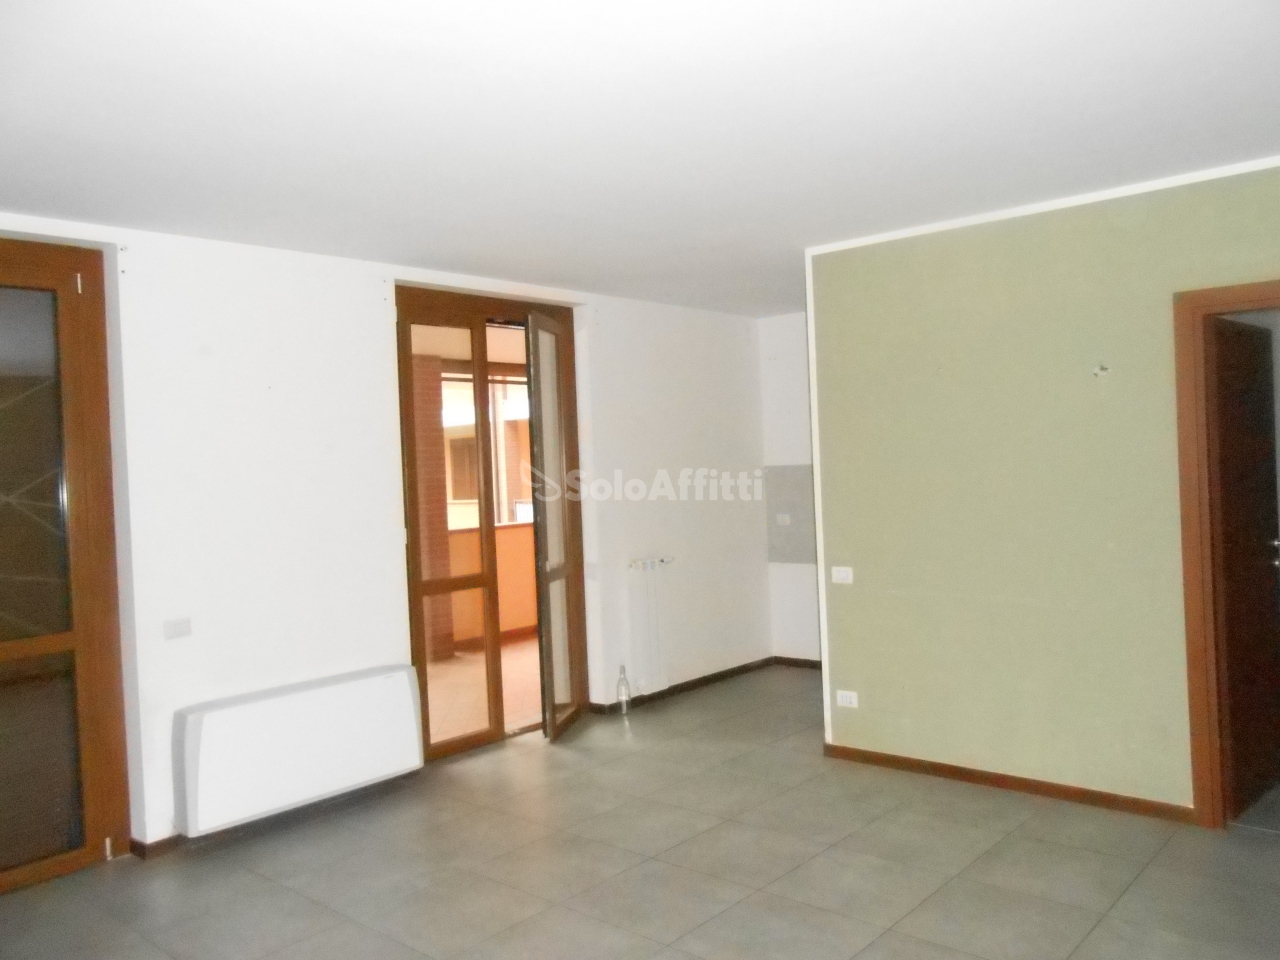 Appartamento in affitto a San Martino Siccomario, 3 locali, prezzo € 660 | PortaleAgenzieImmobiliari.it